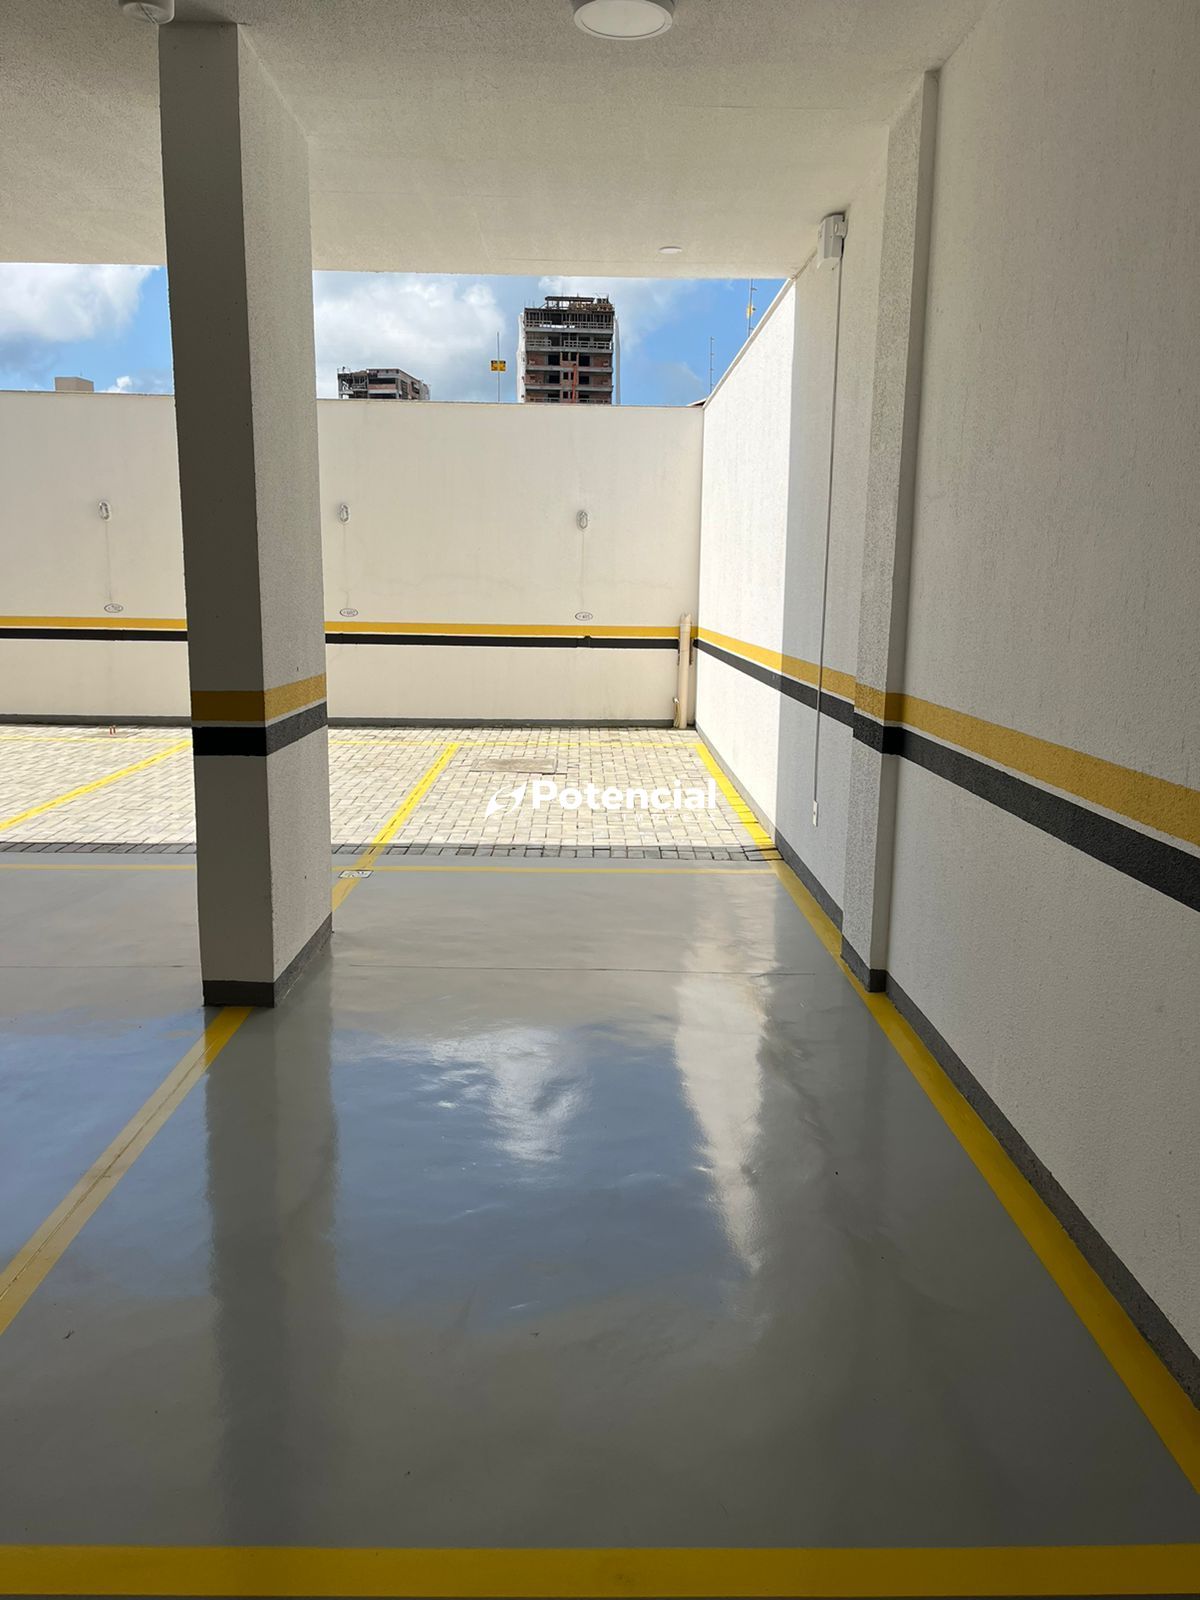 Imagem de Apartamento 2 Suítes | Balneário Perequê - Porto Belo | Potencial Imóveis